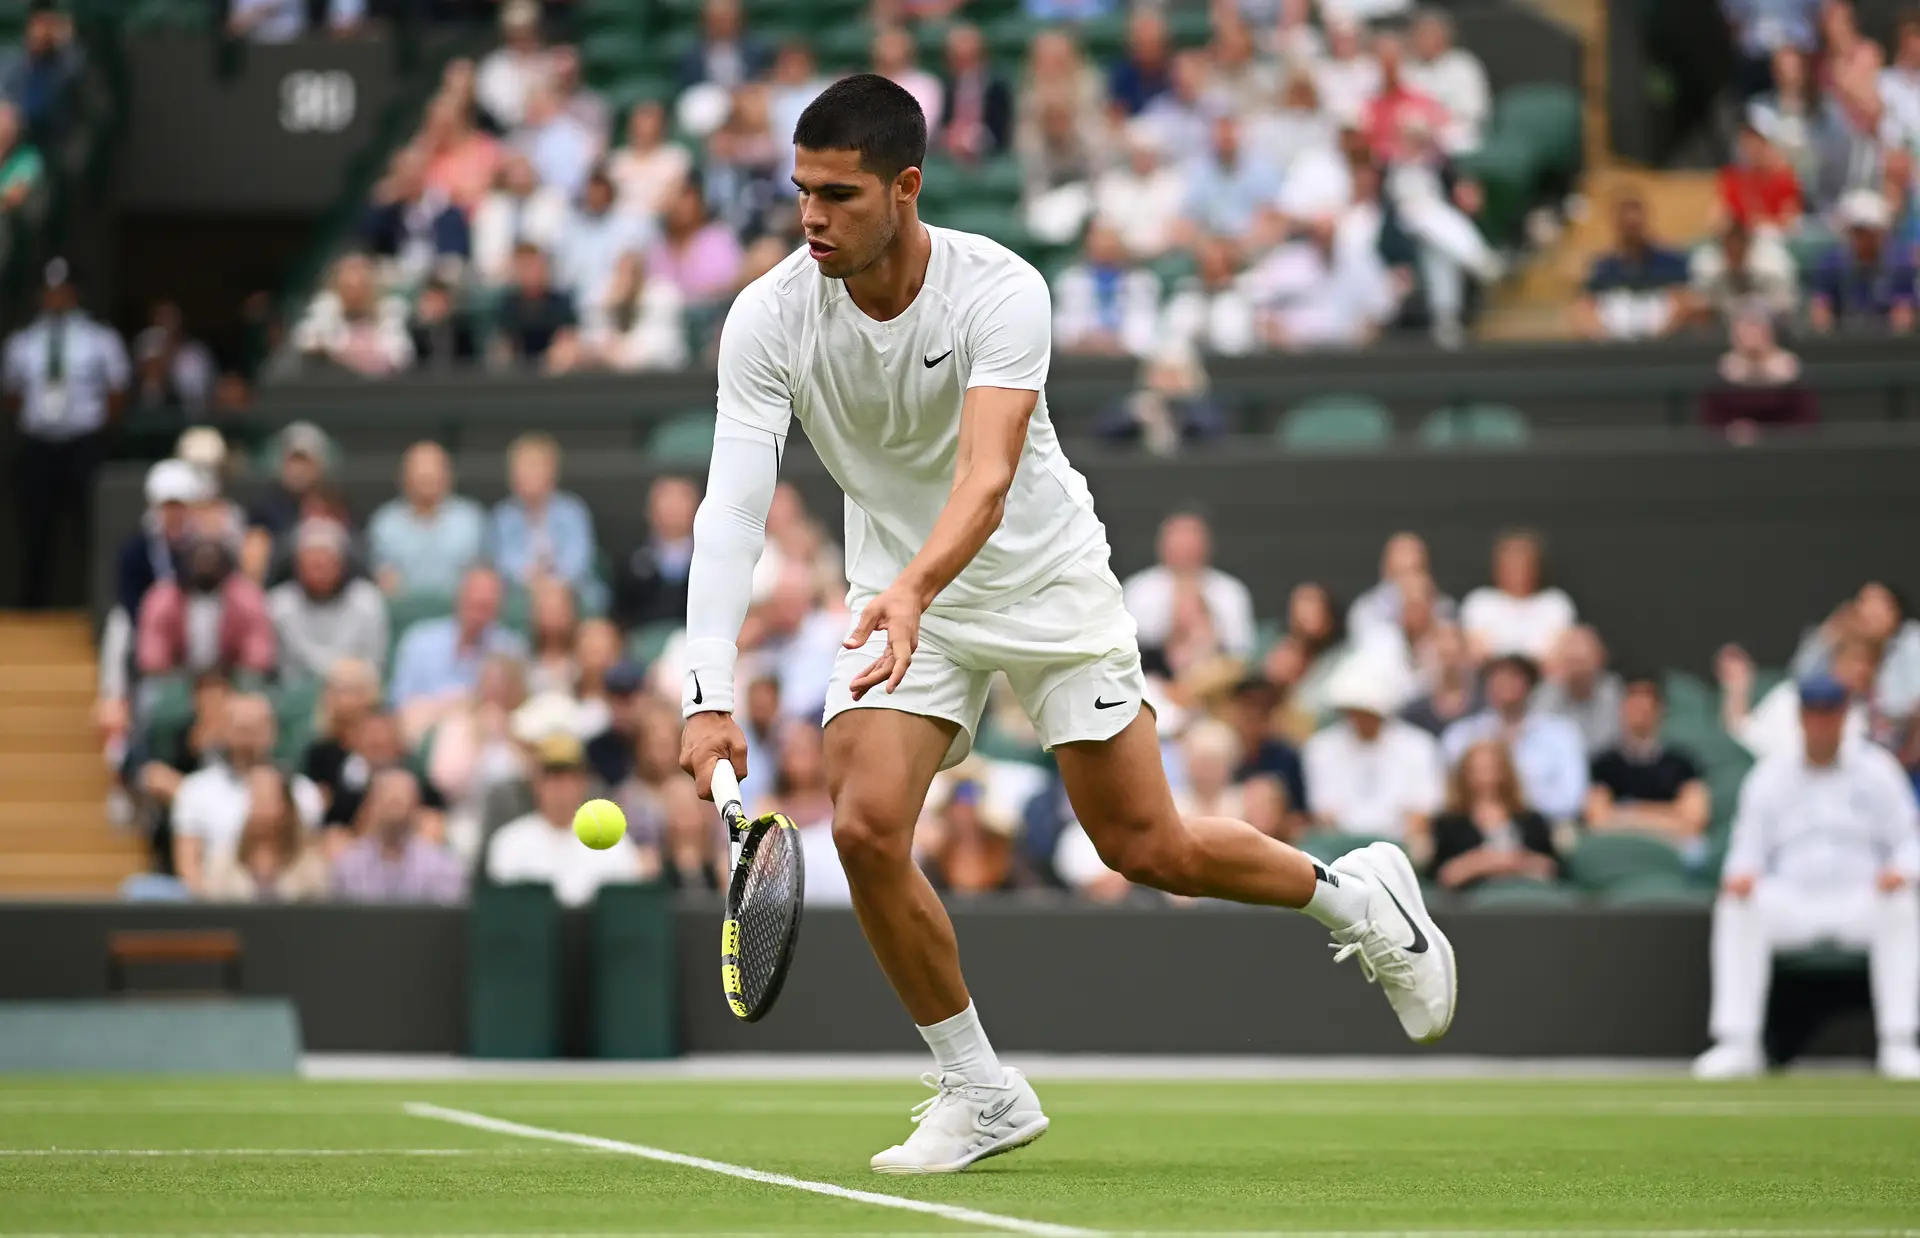 Djokovic vira jogo e vence inglês na estreia em Wimbledon